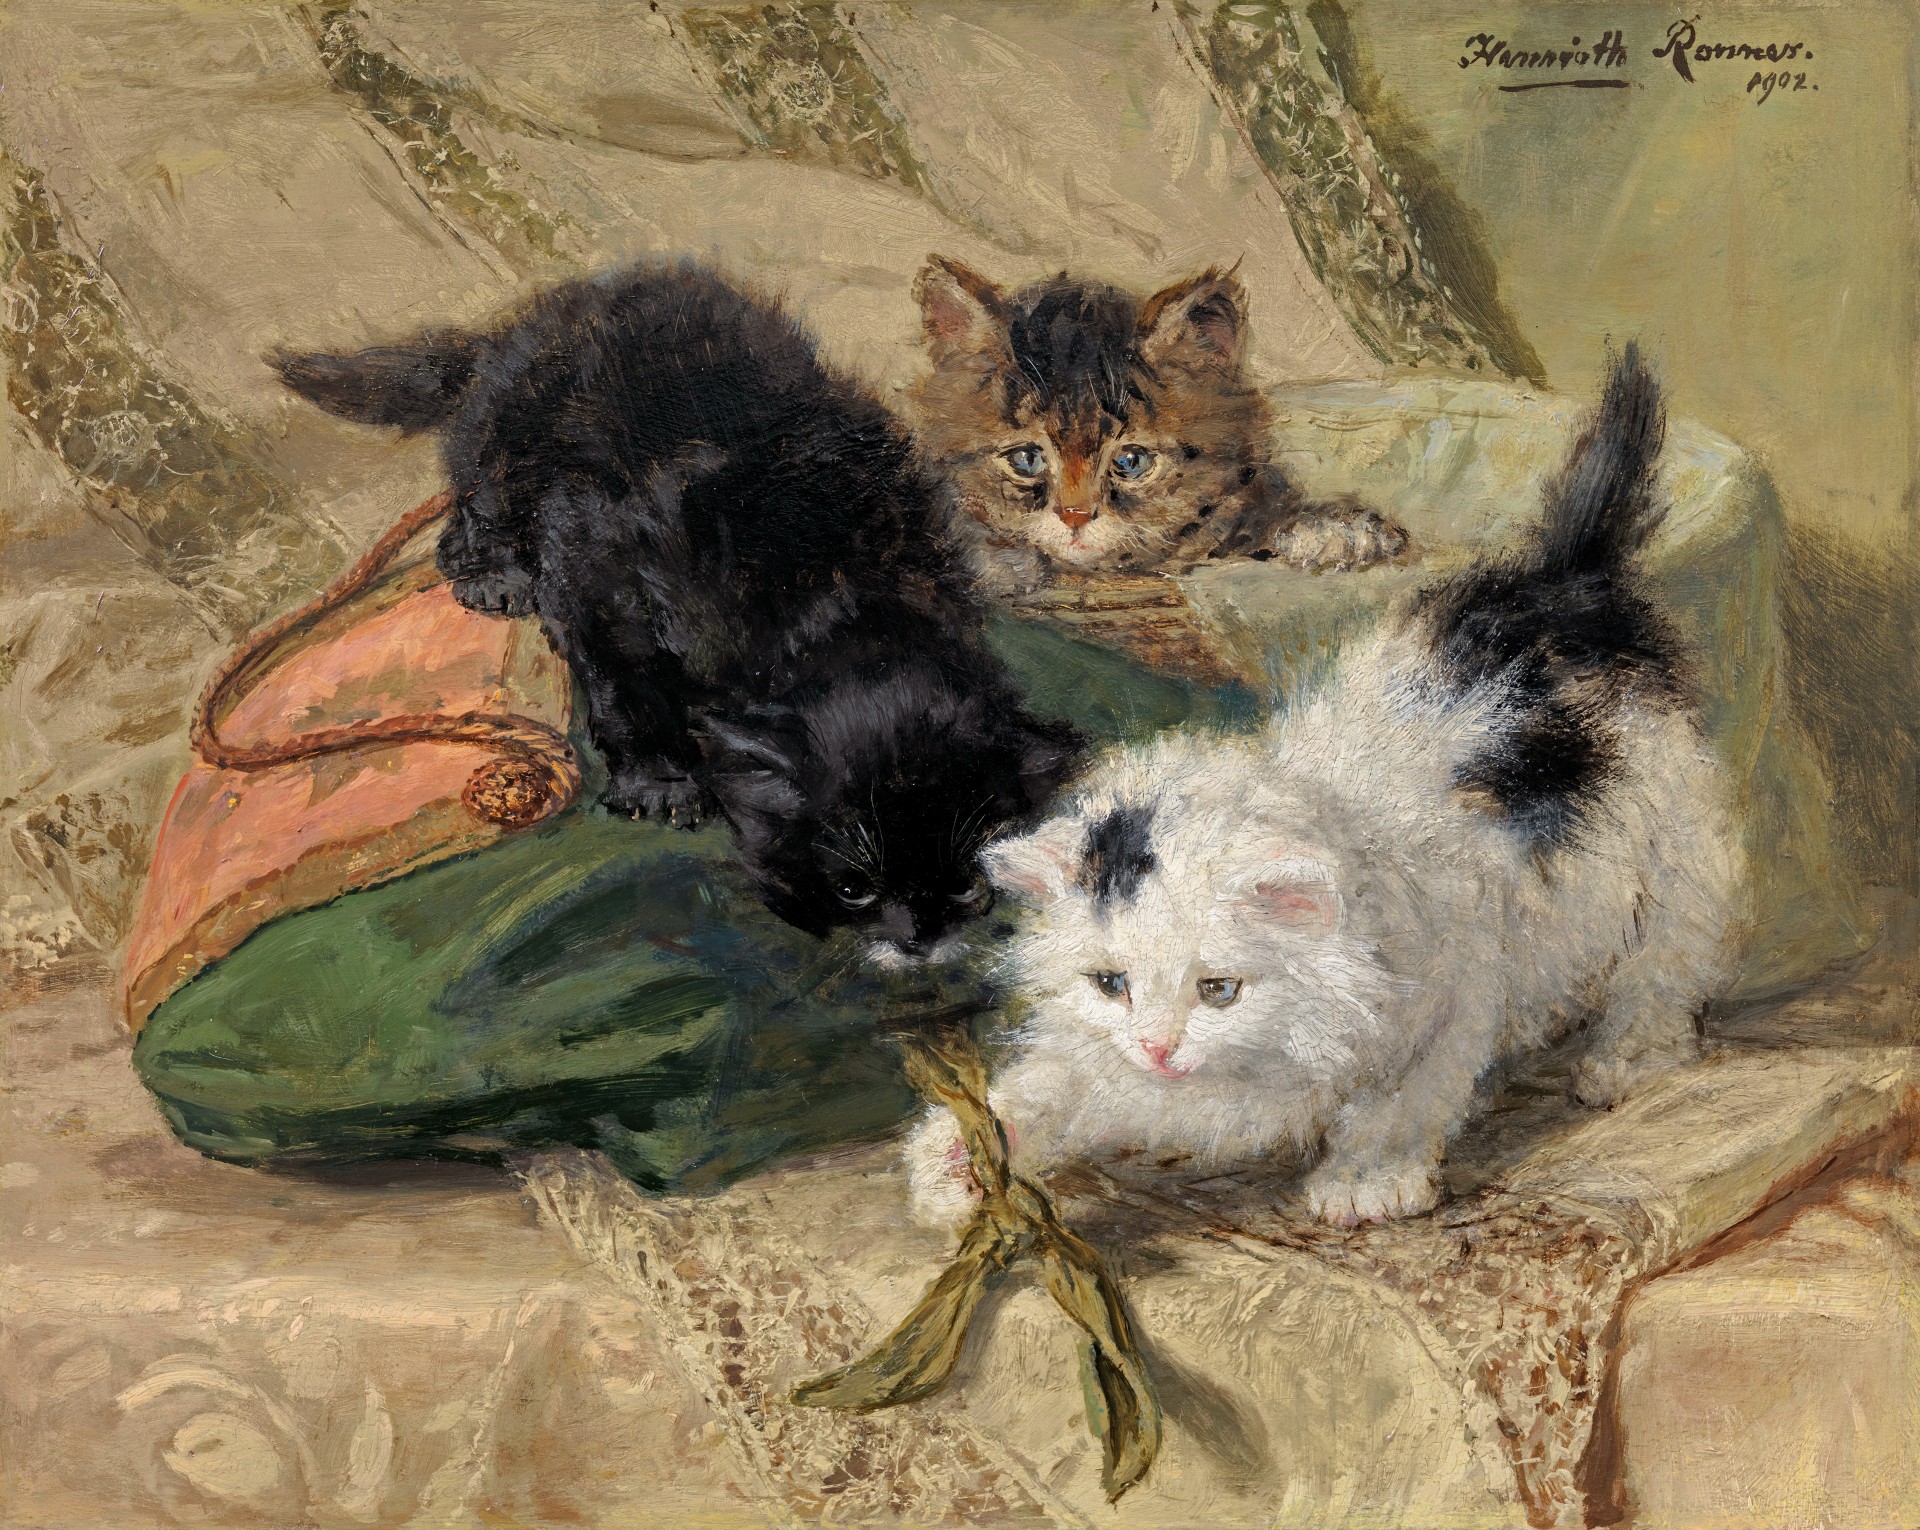 Henriette Ronner-Knip - Three playful kittens - Richard Green